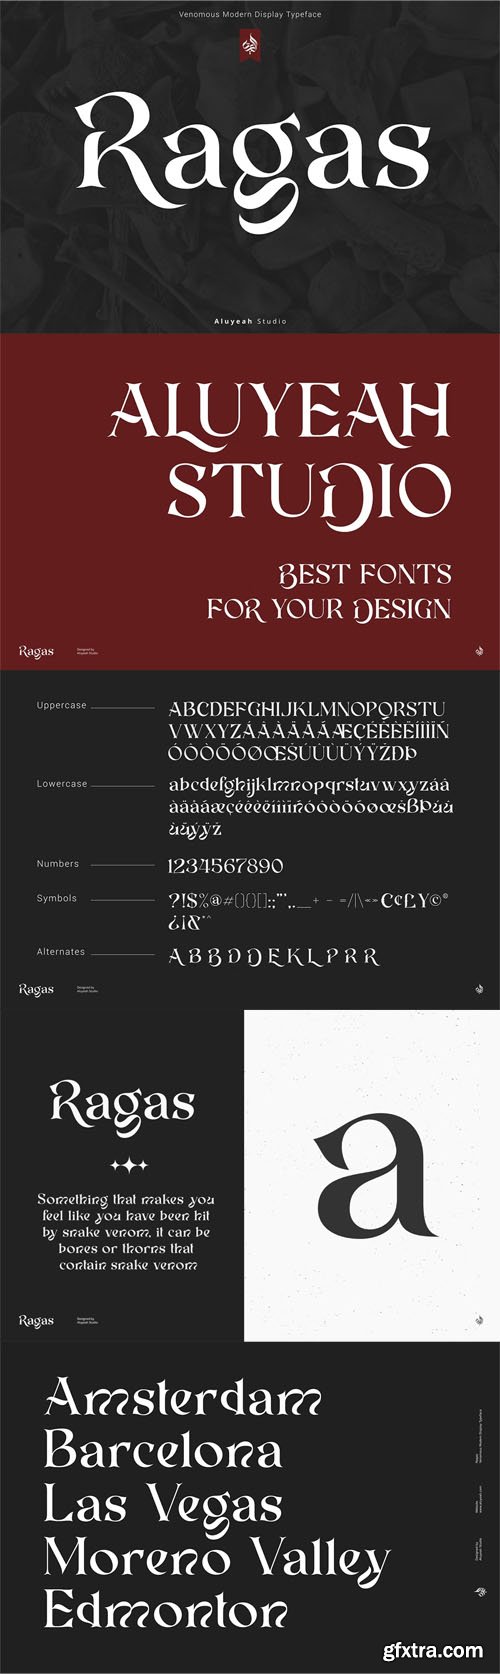 Ragas - Modern Display Typeface